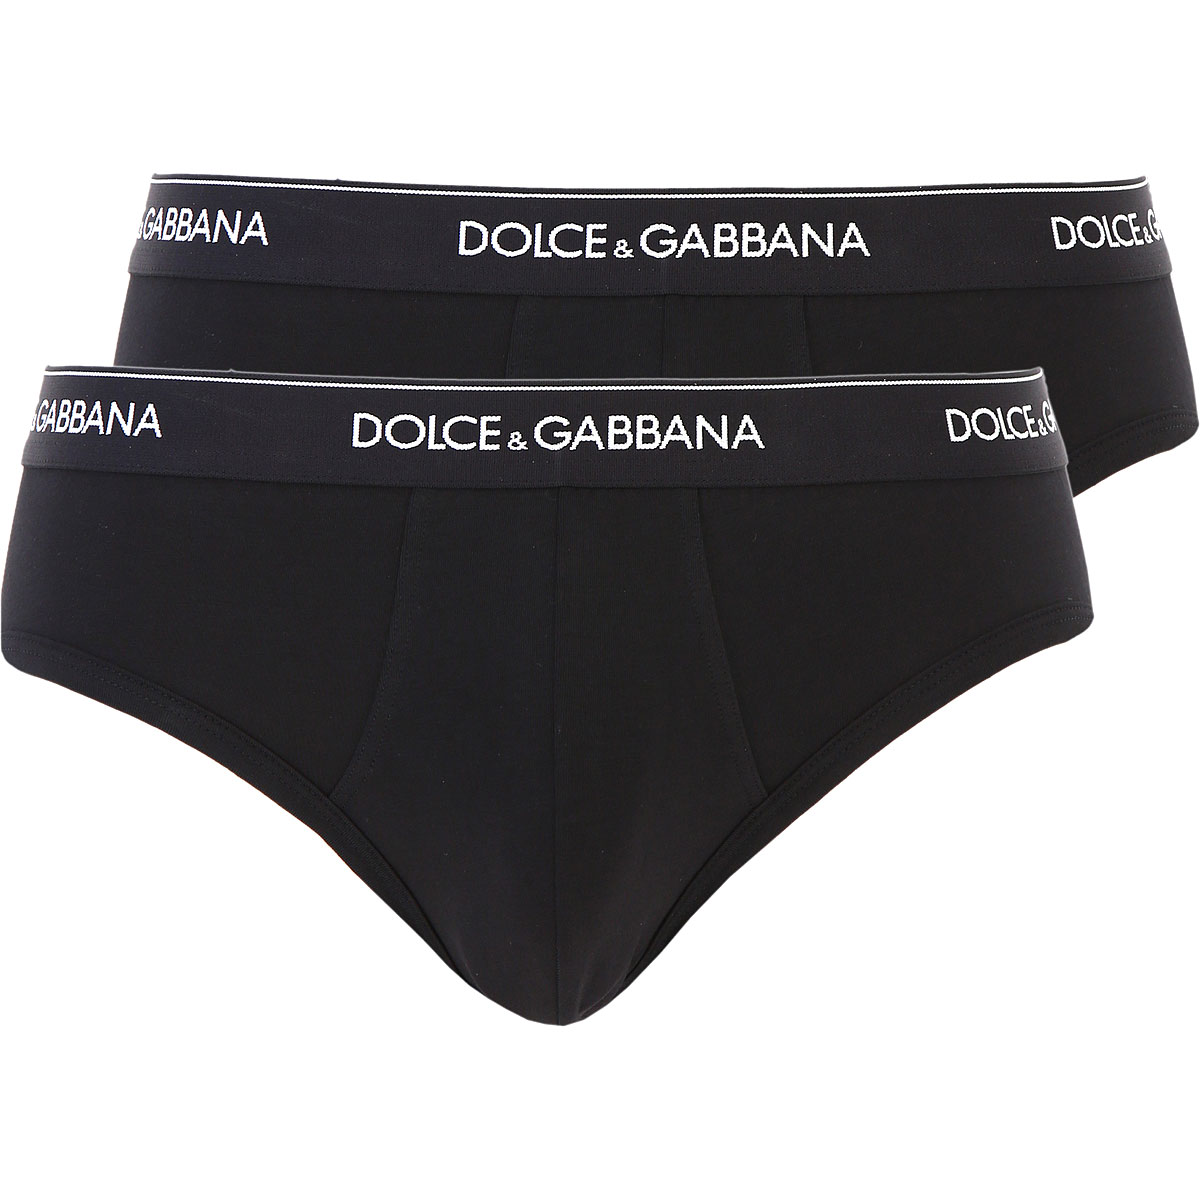 dolce and gabbana mens underwear